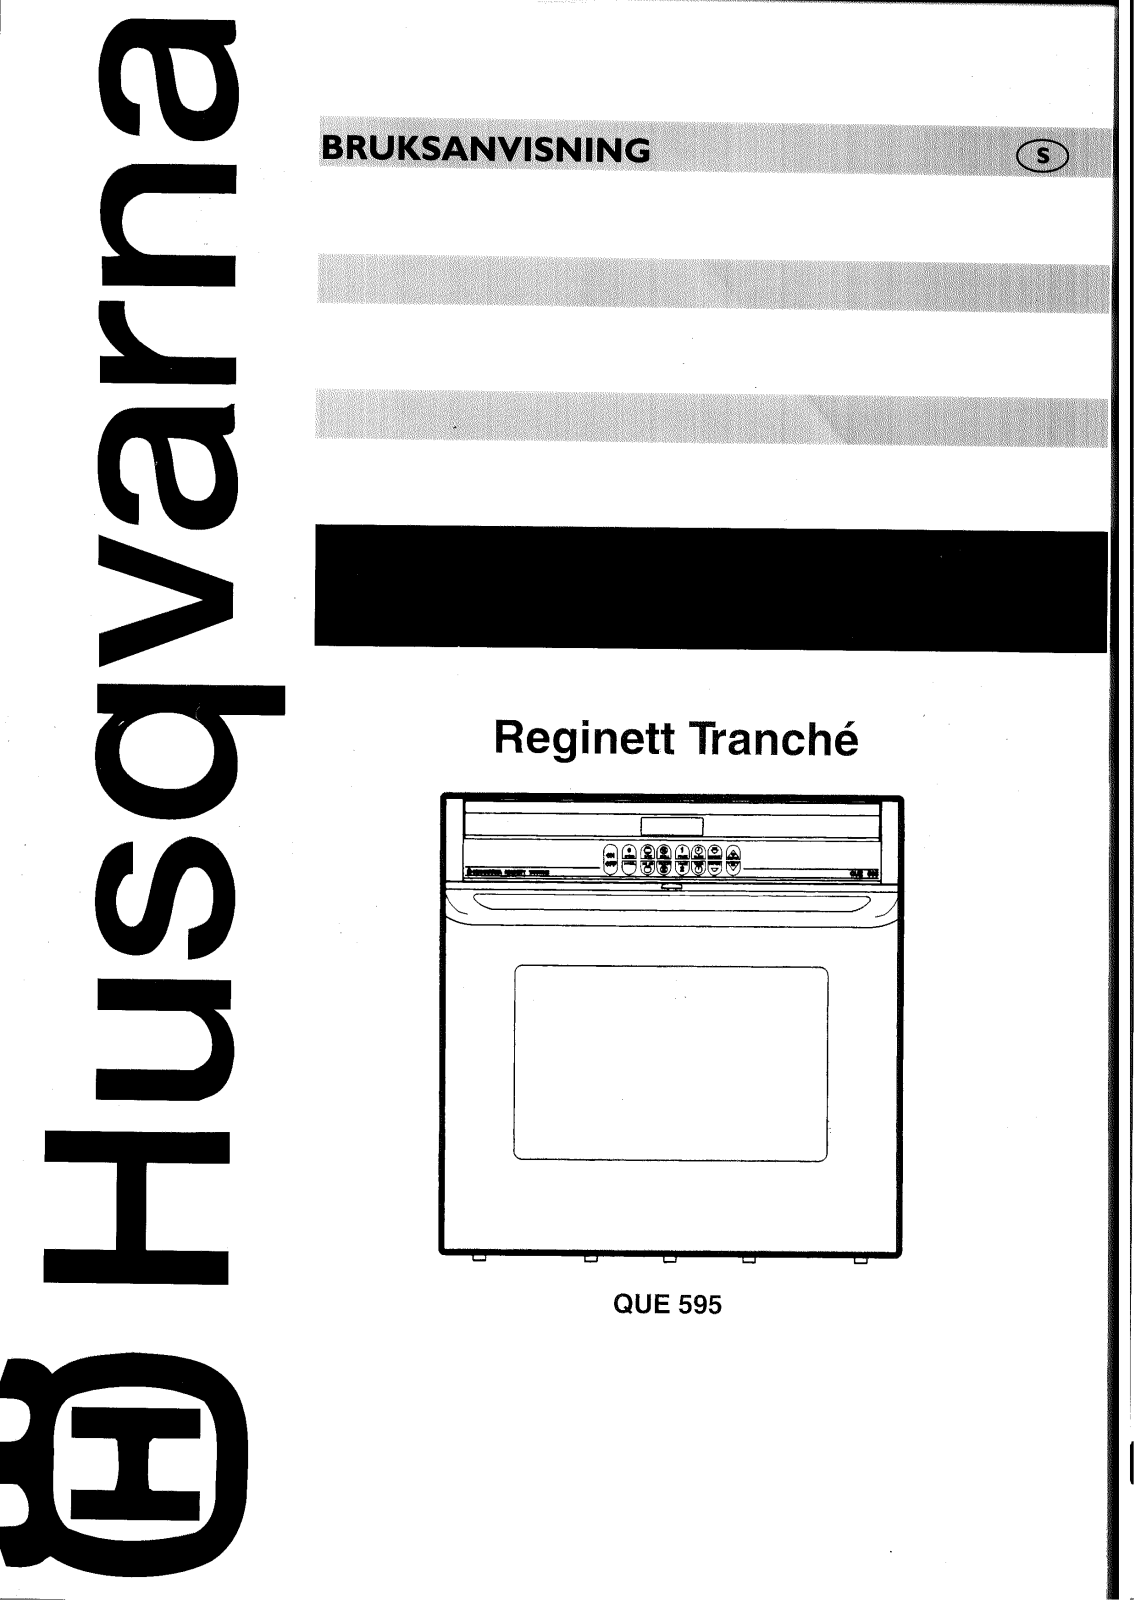 Husqvarna QUE595-G User Manual